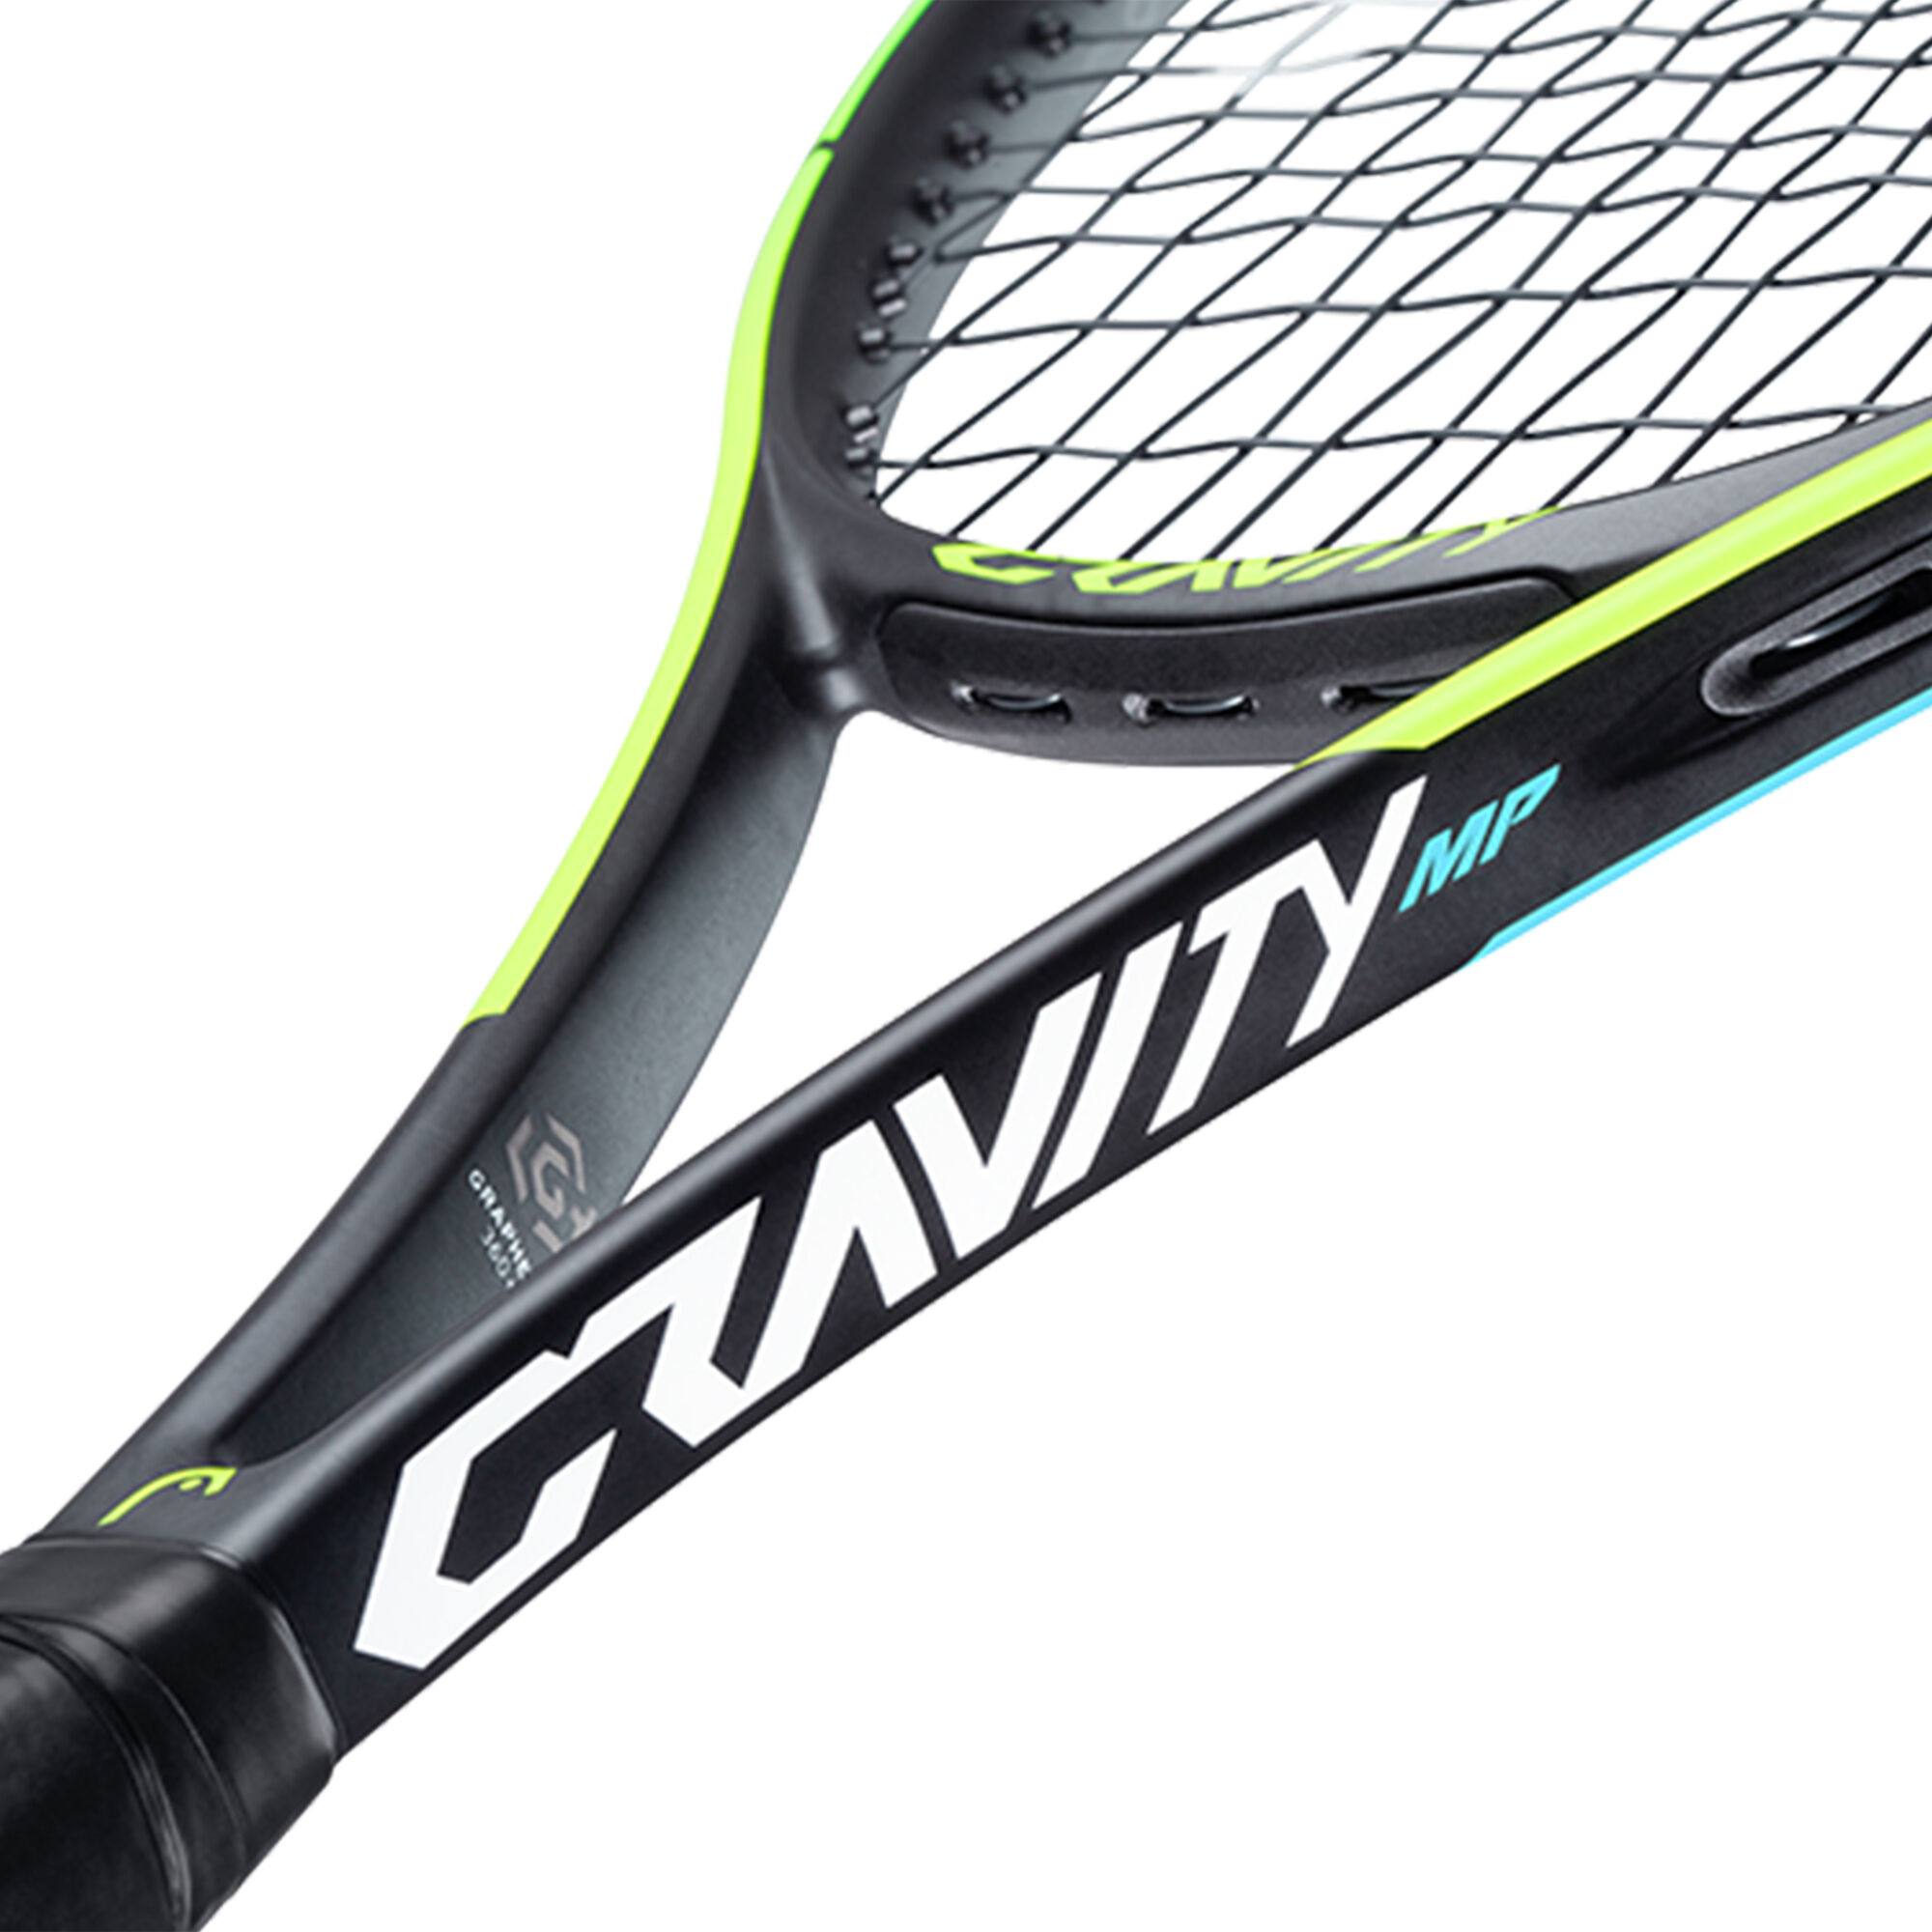 Verleden is er Vlekkeloos buy HEAD Graphene 360+ Gravity MP (2021) Tour Racket online | Tennis-Point